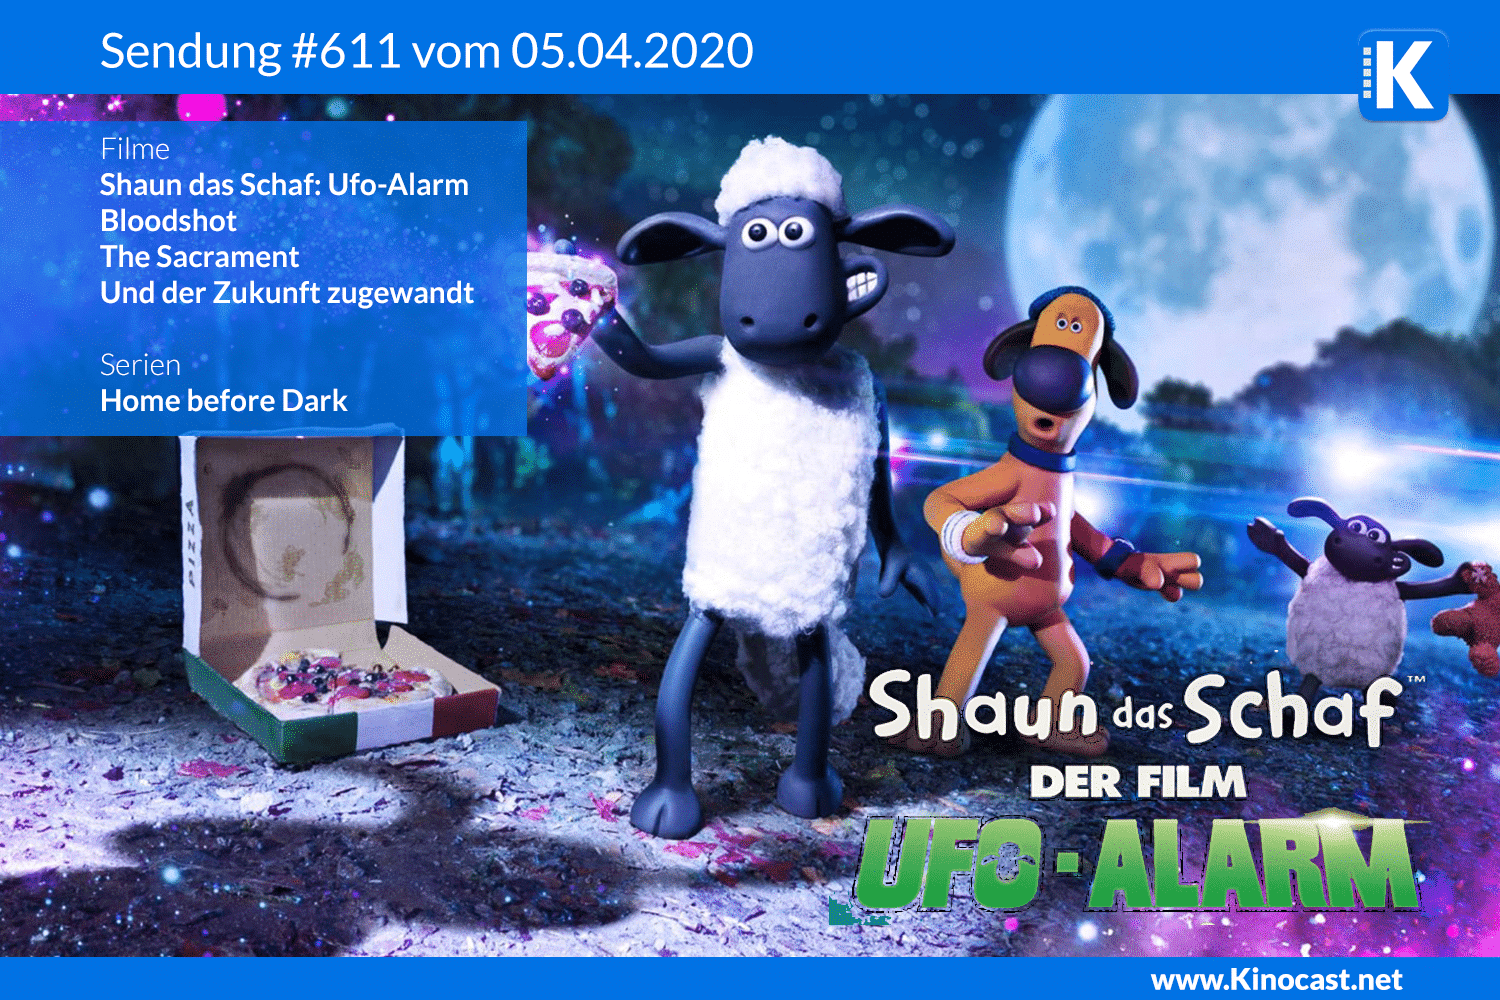 Shaun das Schaf ufo alarm farmageddon bloodshot sacrament Download film german deutsch